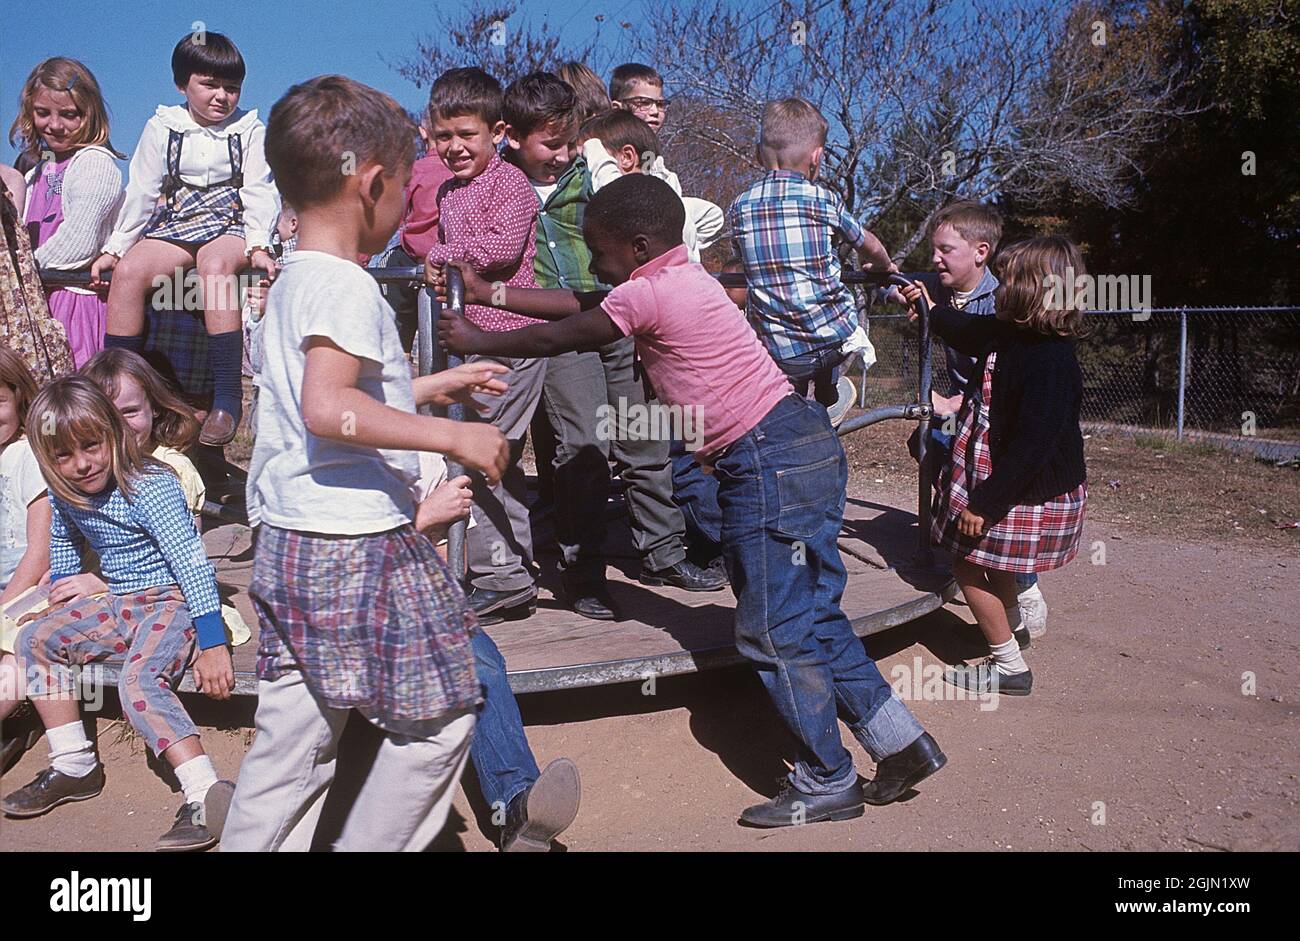 USA Alabama 1966. Scena da un parco giochi locale dove i bambini giocano insieme. Davanti ad un ragazzo colorato, il resto dei bambini sono bianchi. Kodachrome vetrino originale. Credit Roland Palm Ref 6-6-5 Foto Stock